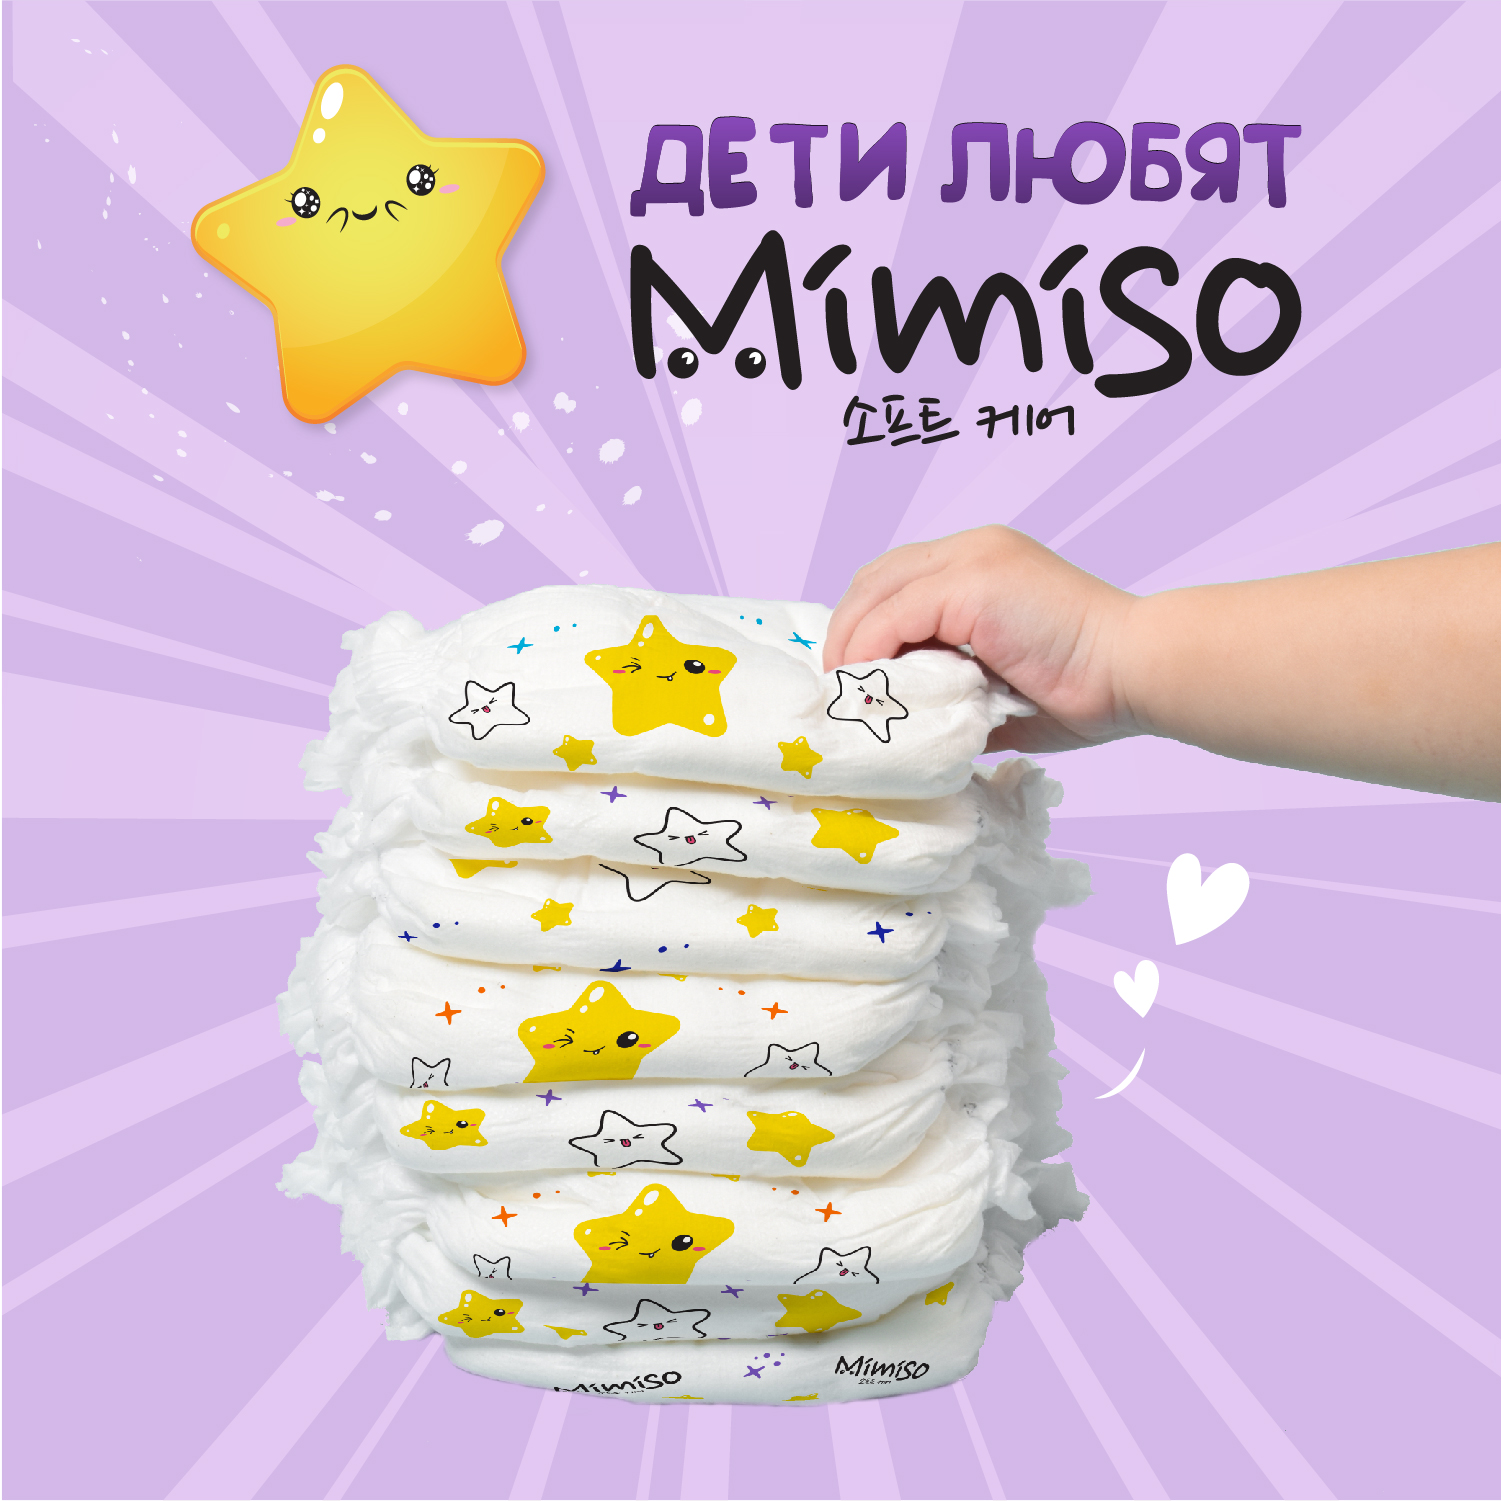 Трусики Mimiso одноразовые для детей 5/XL 13-20 кг mega-pack 78шт - фото 3